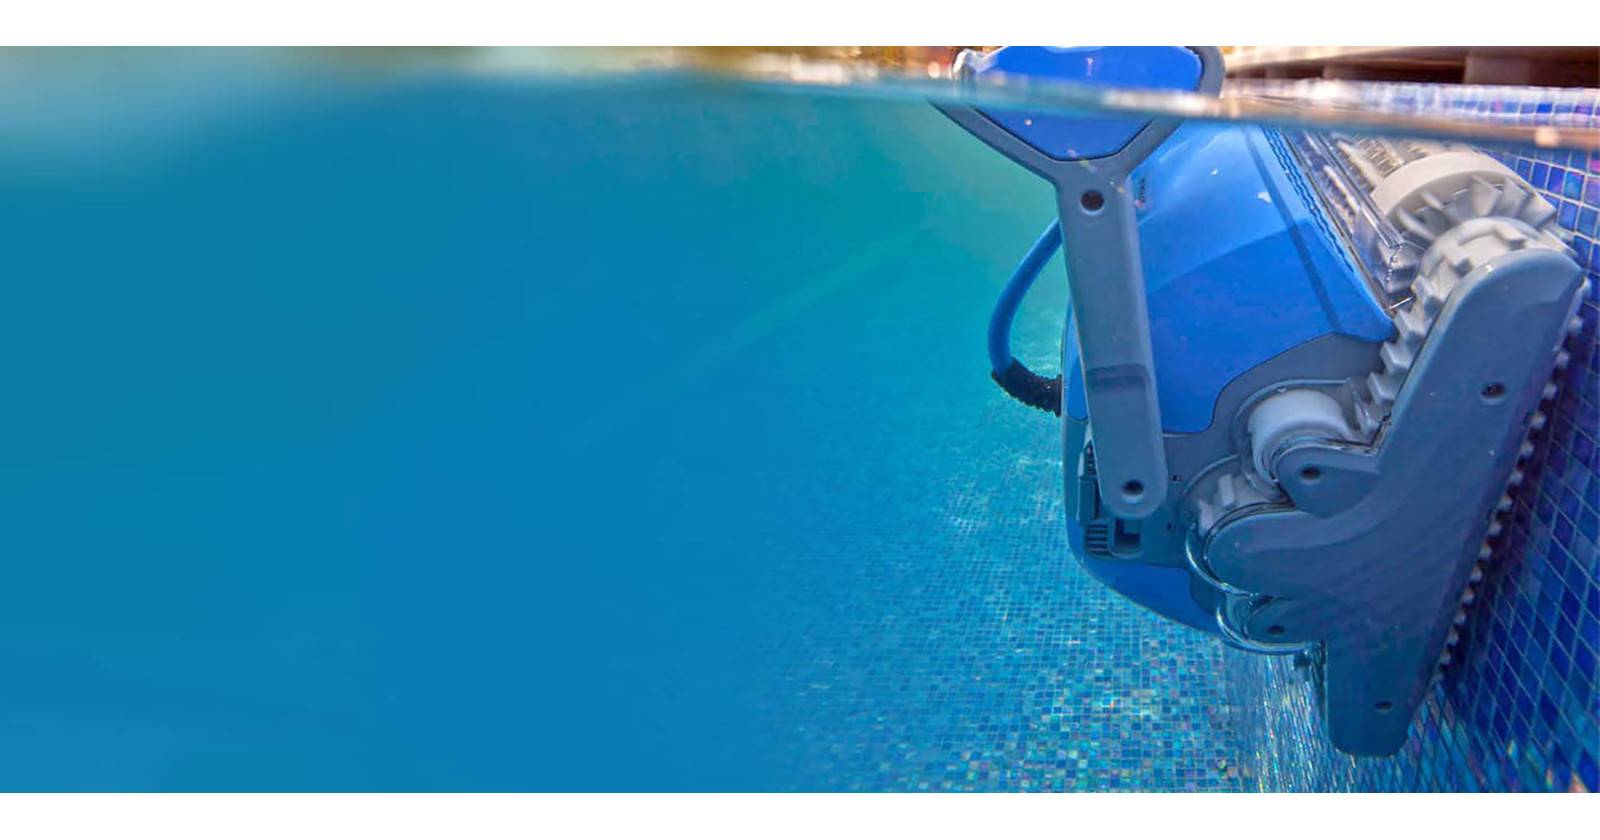 Robot piscine pas cher - Achat en livraison gratuite - ID Piscine